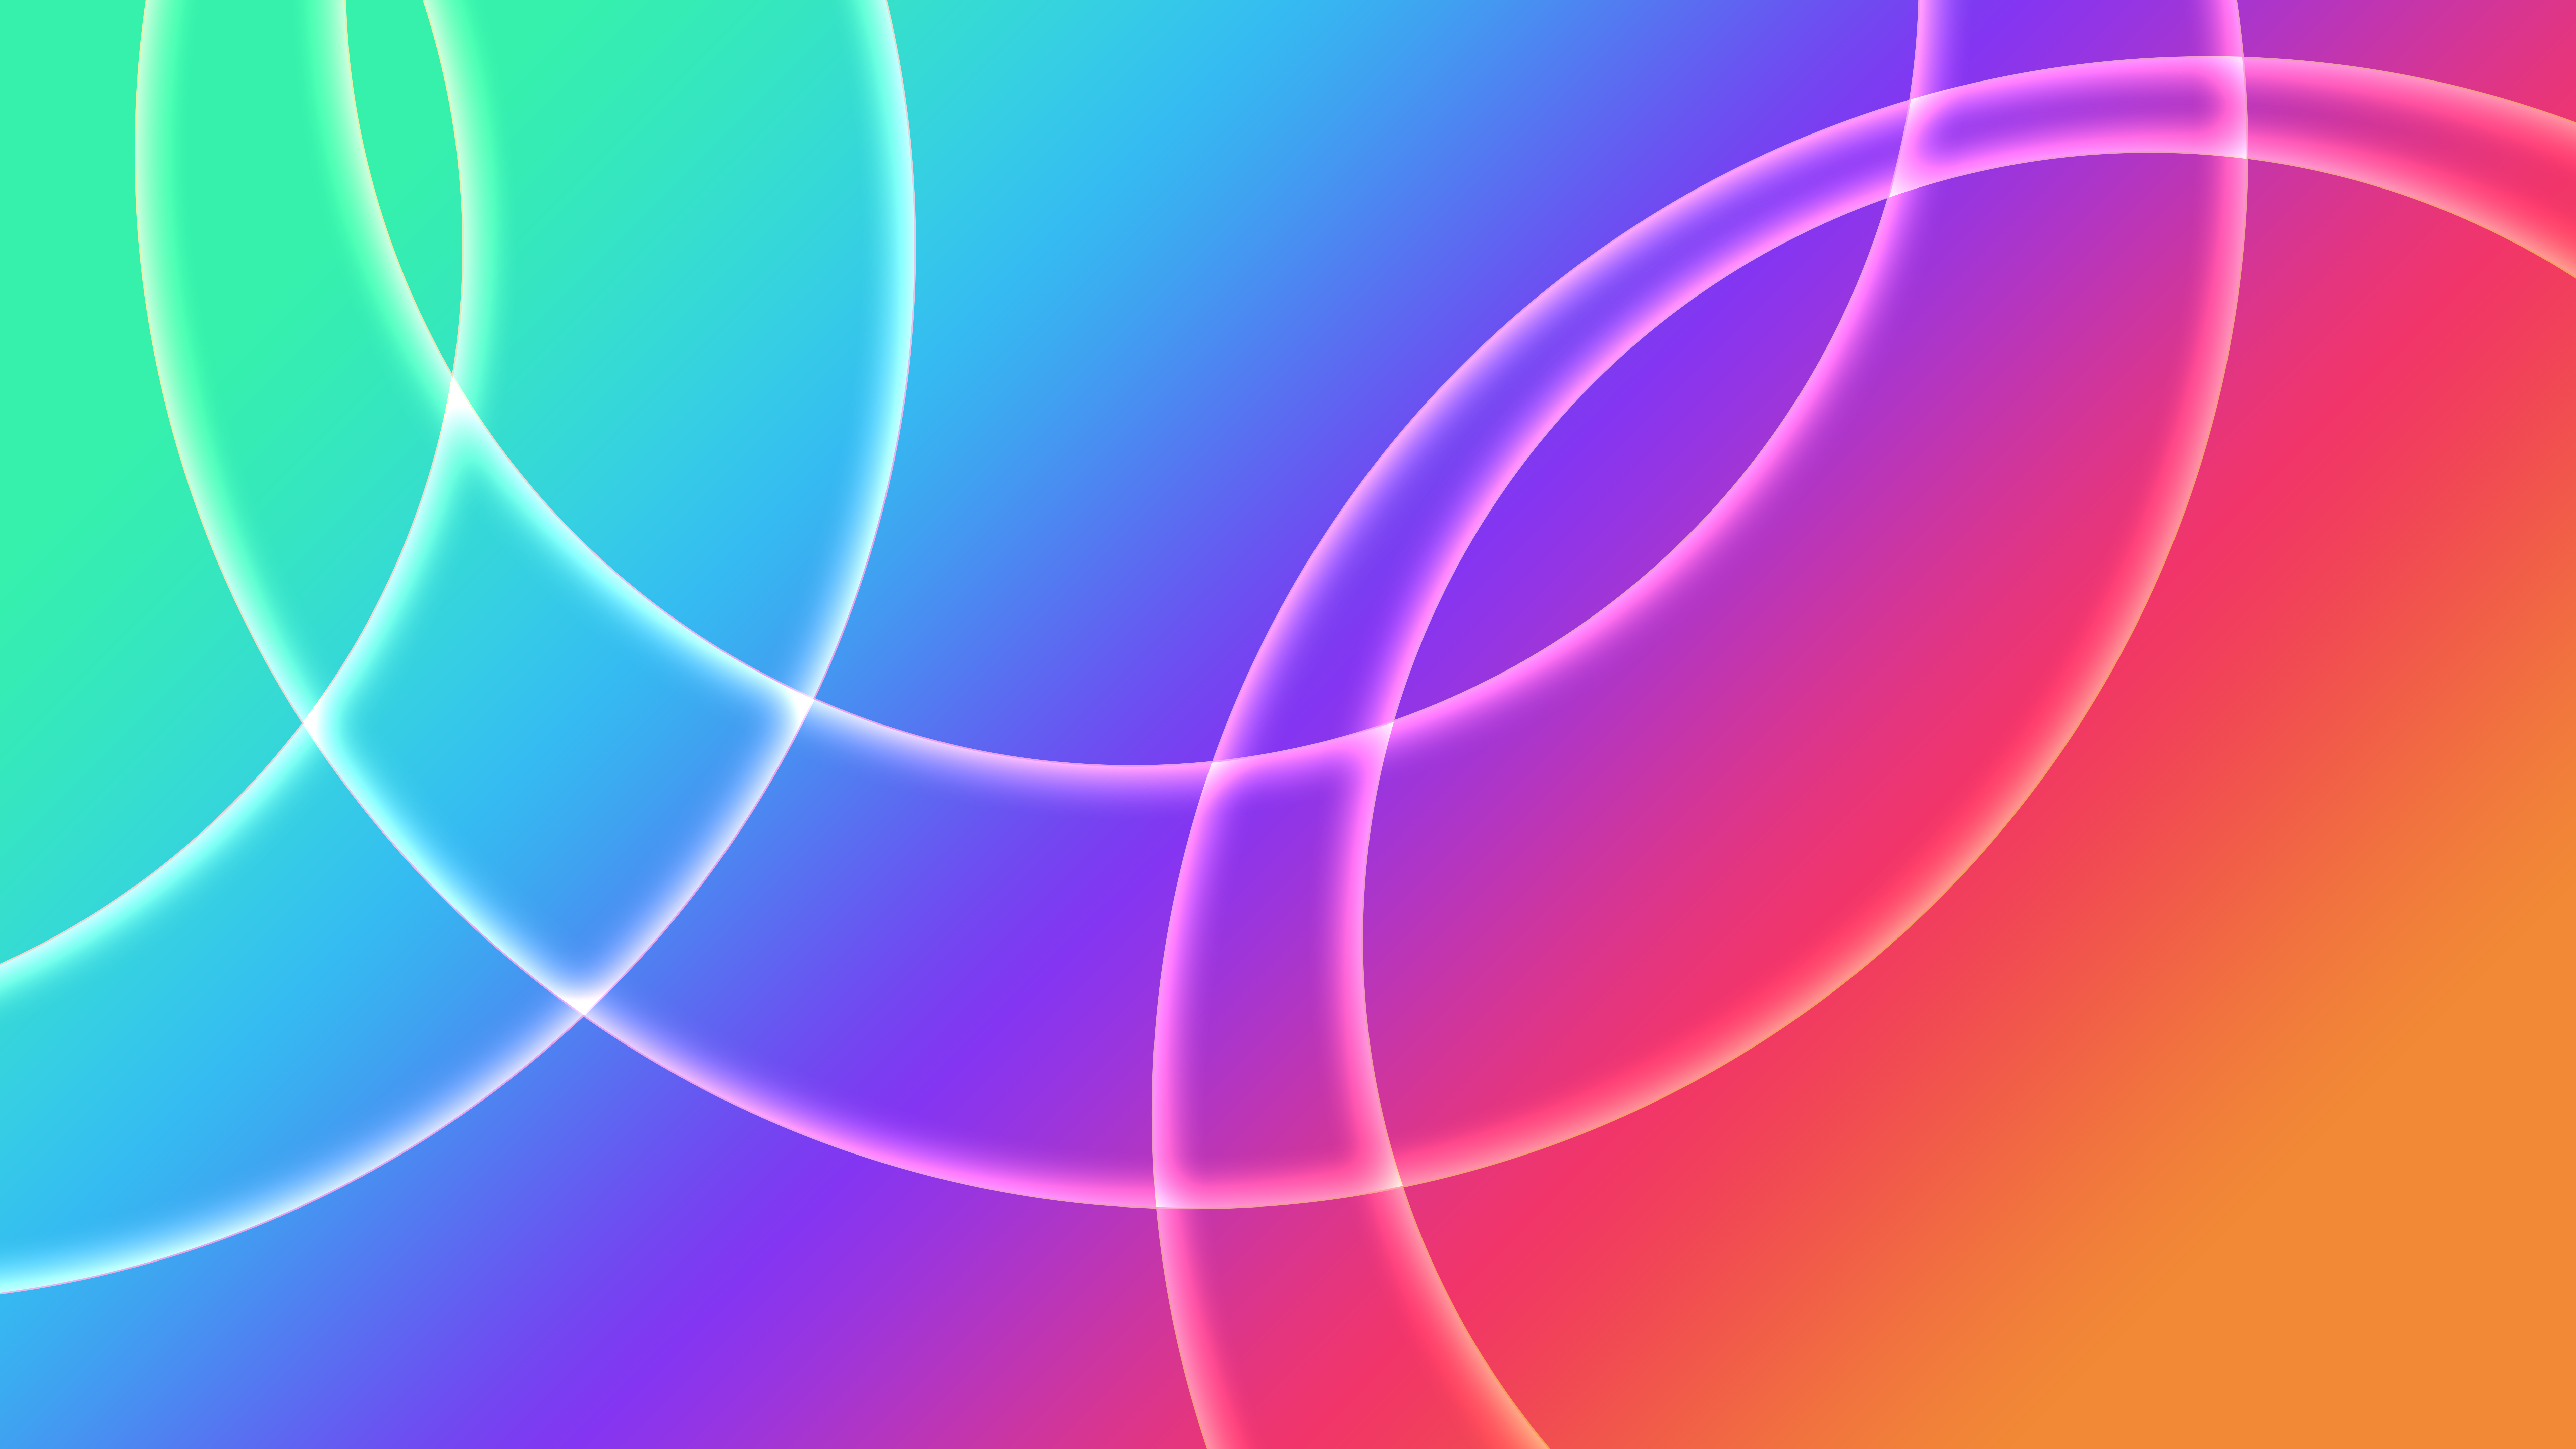 Circles between fading colors Wallpaper 8k Ultra HD ID:8381